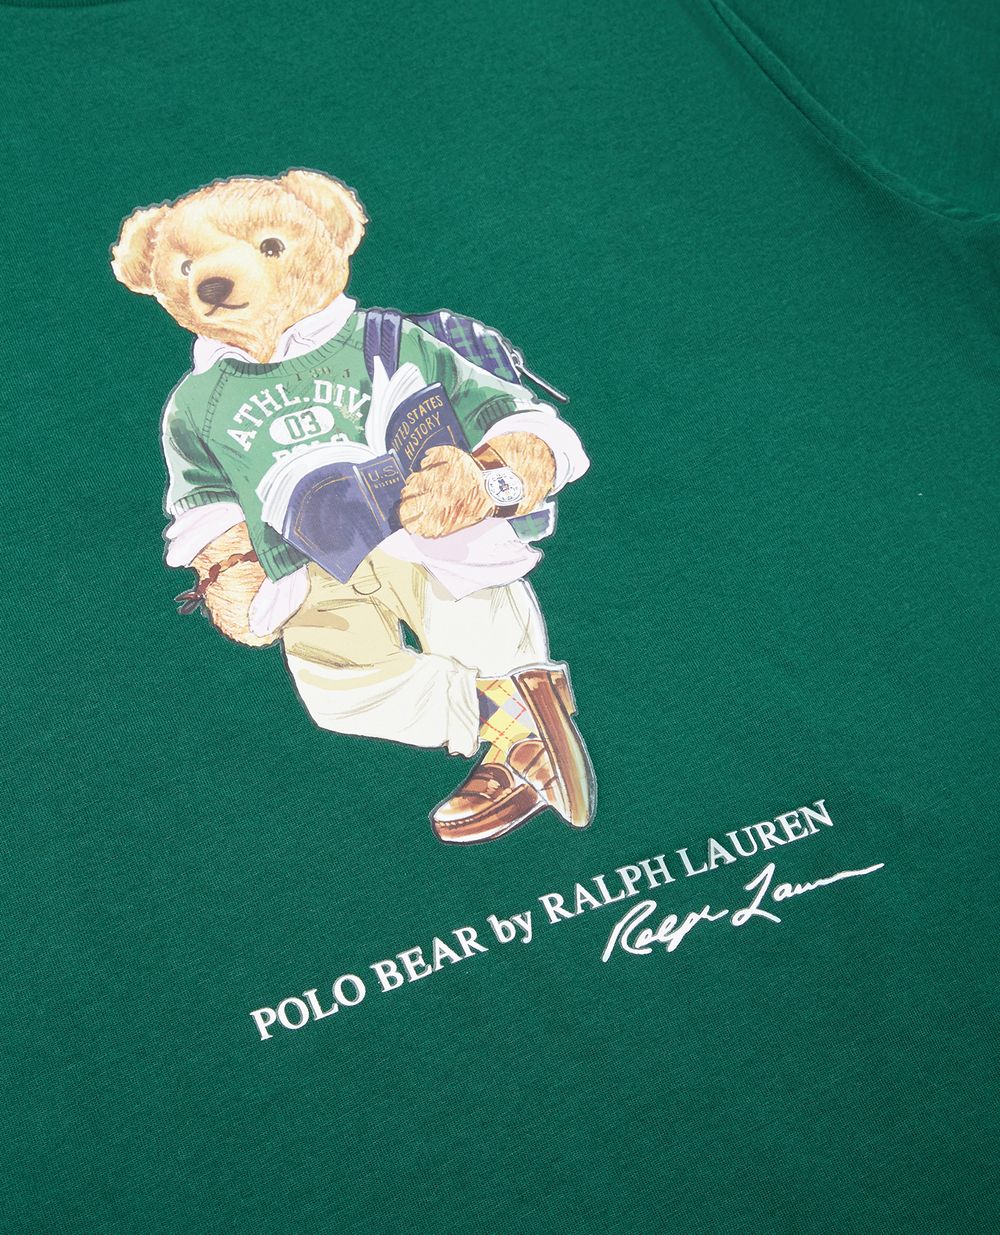 Детская футболка Polo Bear Polo Ralph Lauren Kids 322853828009, зеленый цвет • Купить в интернет-магазине Kameron